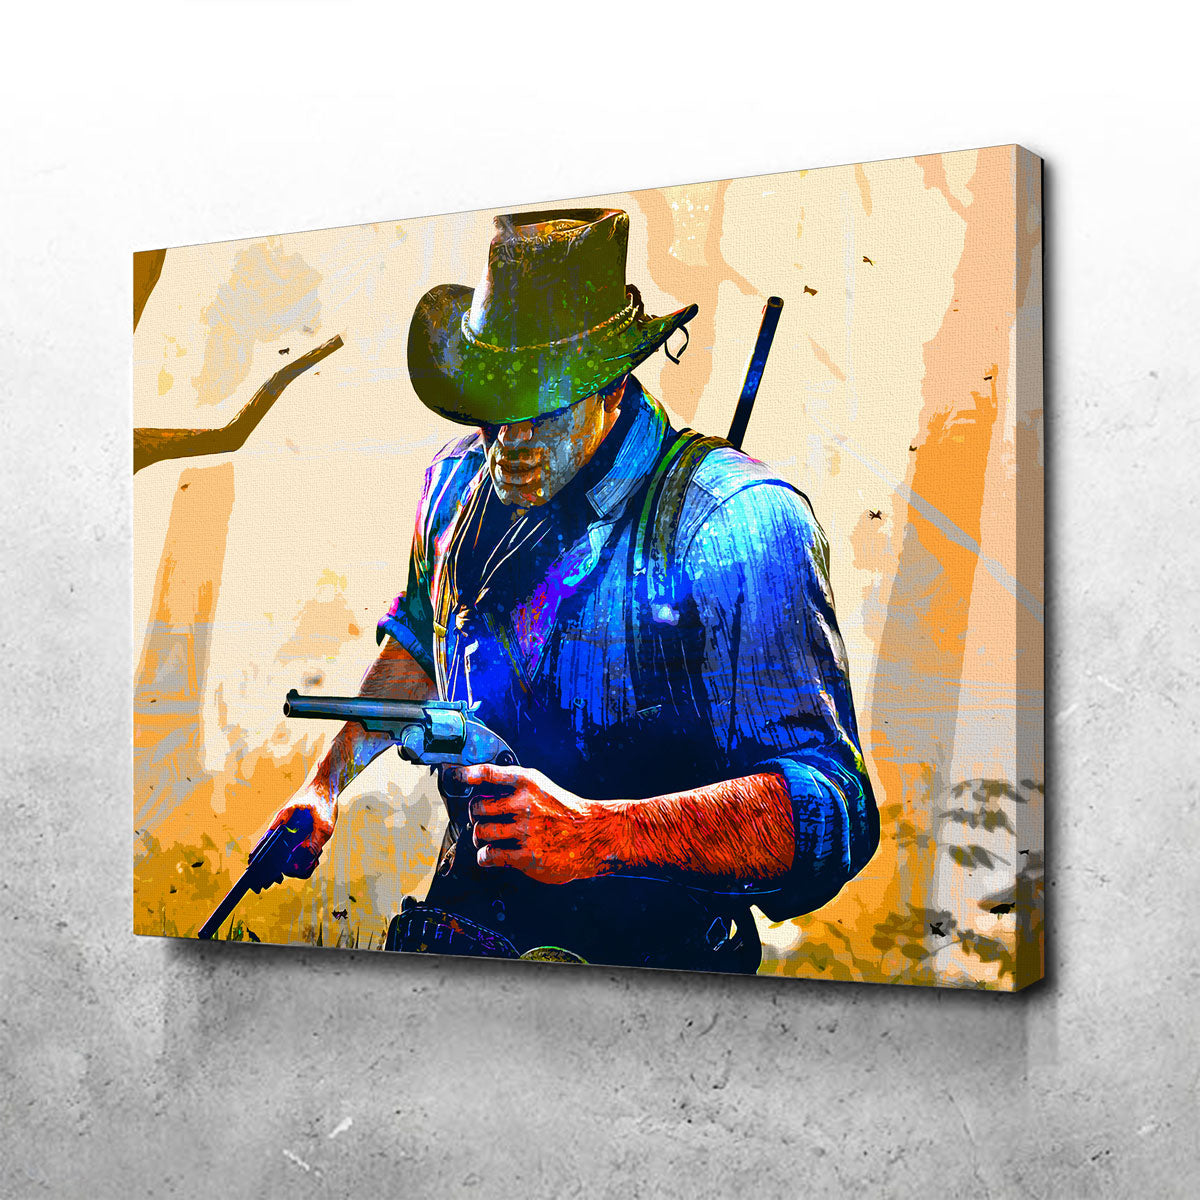 Wallpaper hat, rockstar, cowboy, Red Dead Redemption 2, arthur morgan, rdr  images for desktop, section игры - download